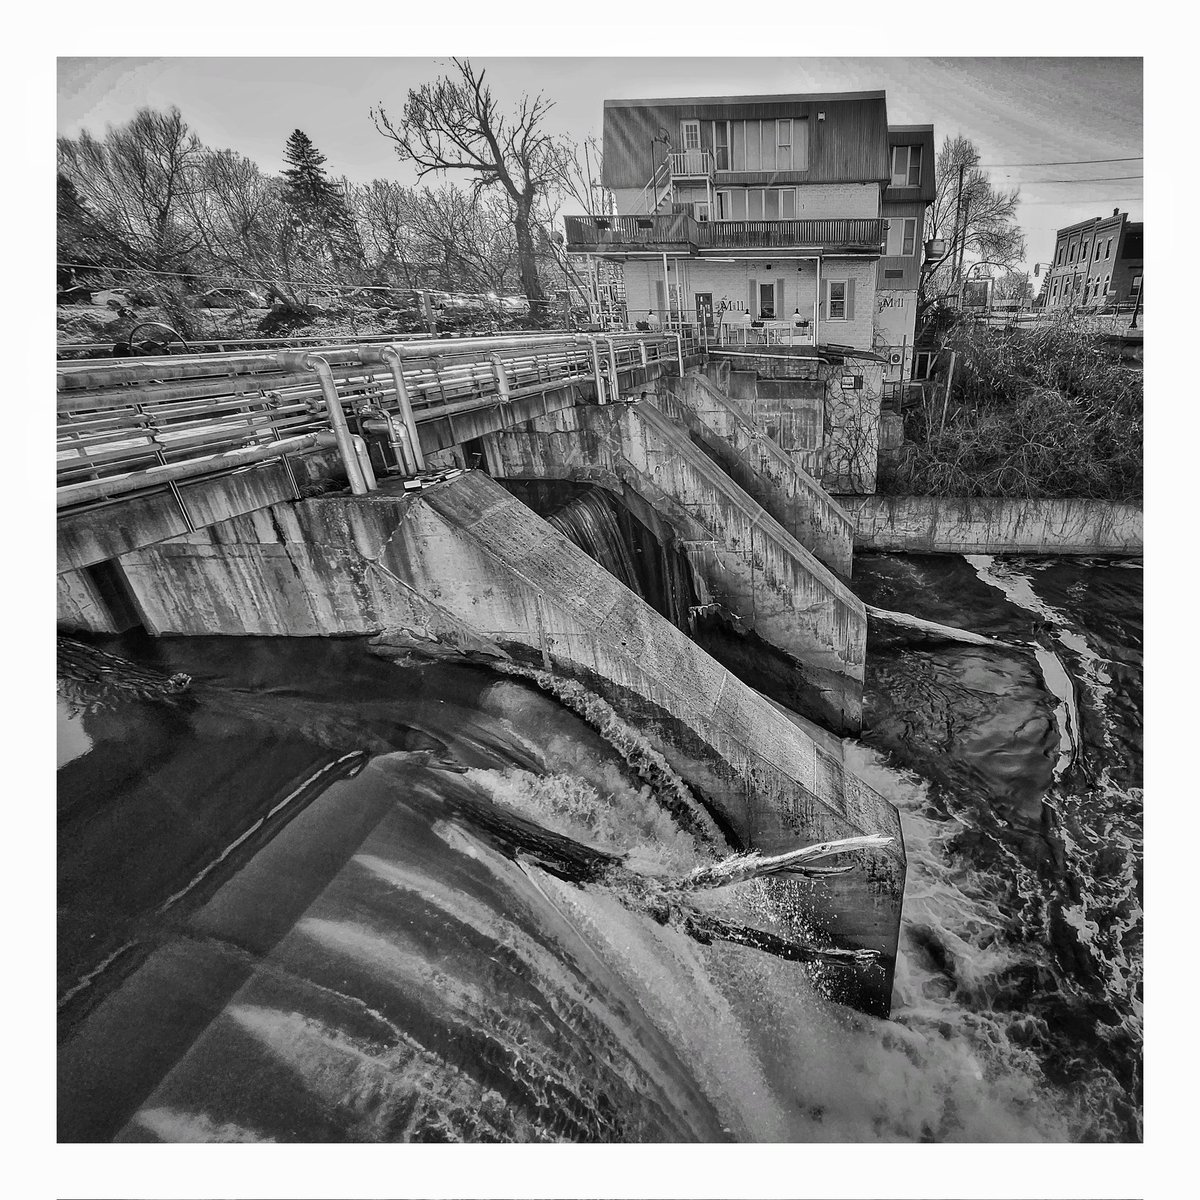 Thornbury Falls. #Thornbury #BlueMountains #Waterfall #Dam #BeaverRiver #HeHeBeaver #Photography